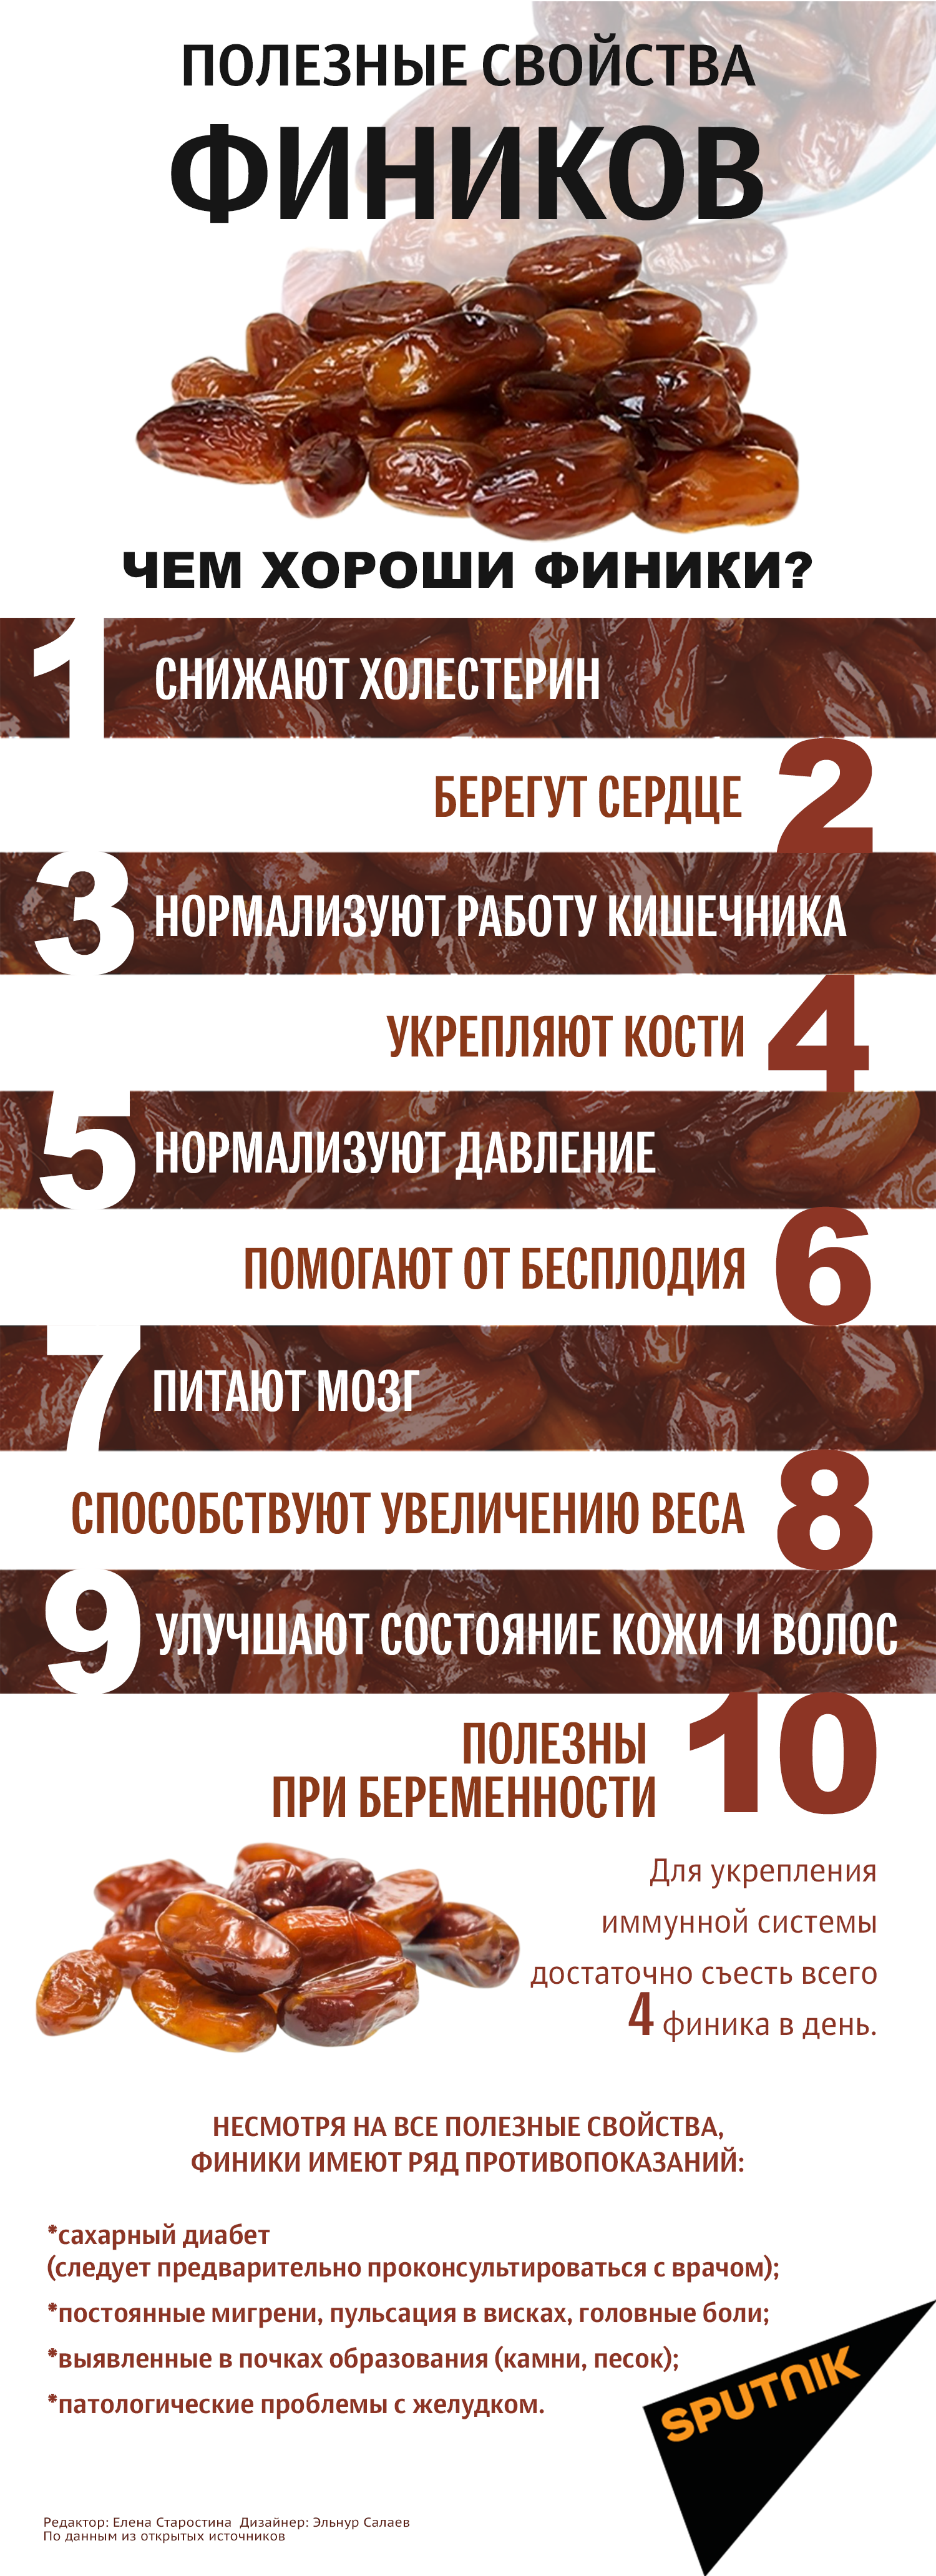 Инфографика: Полезные свойства фиников - Sputnik Азербайджан, 1920, 17.04.2021